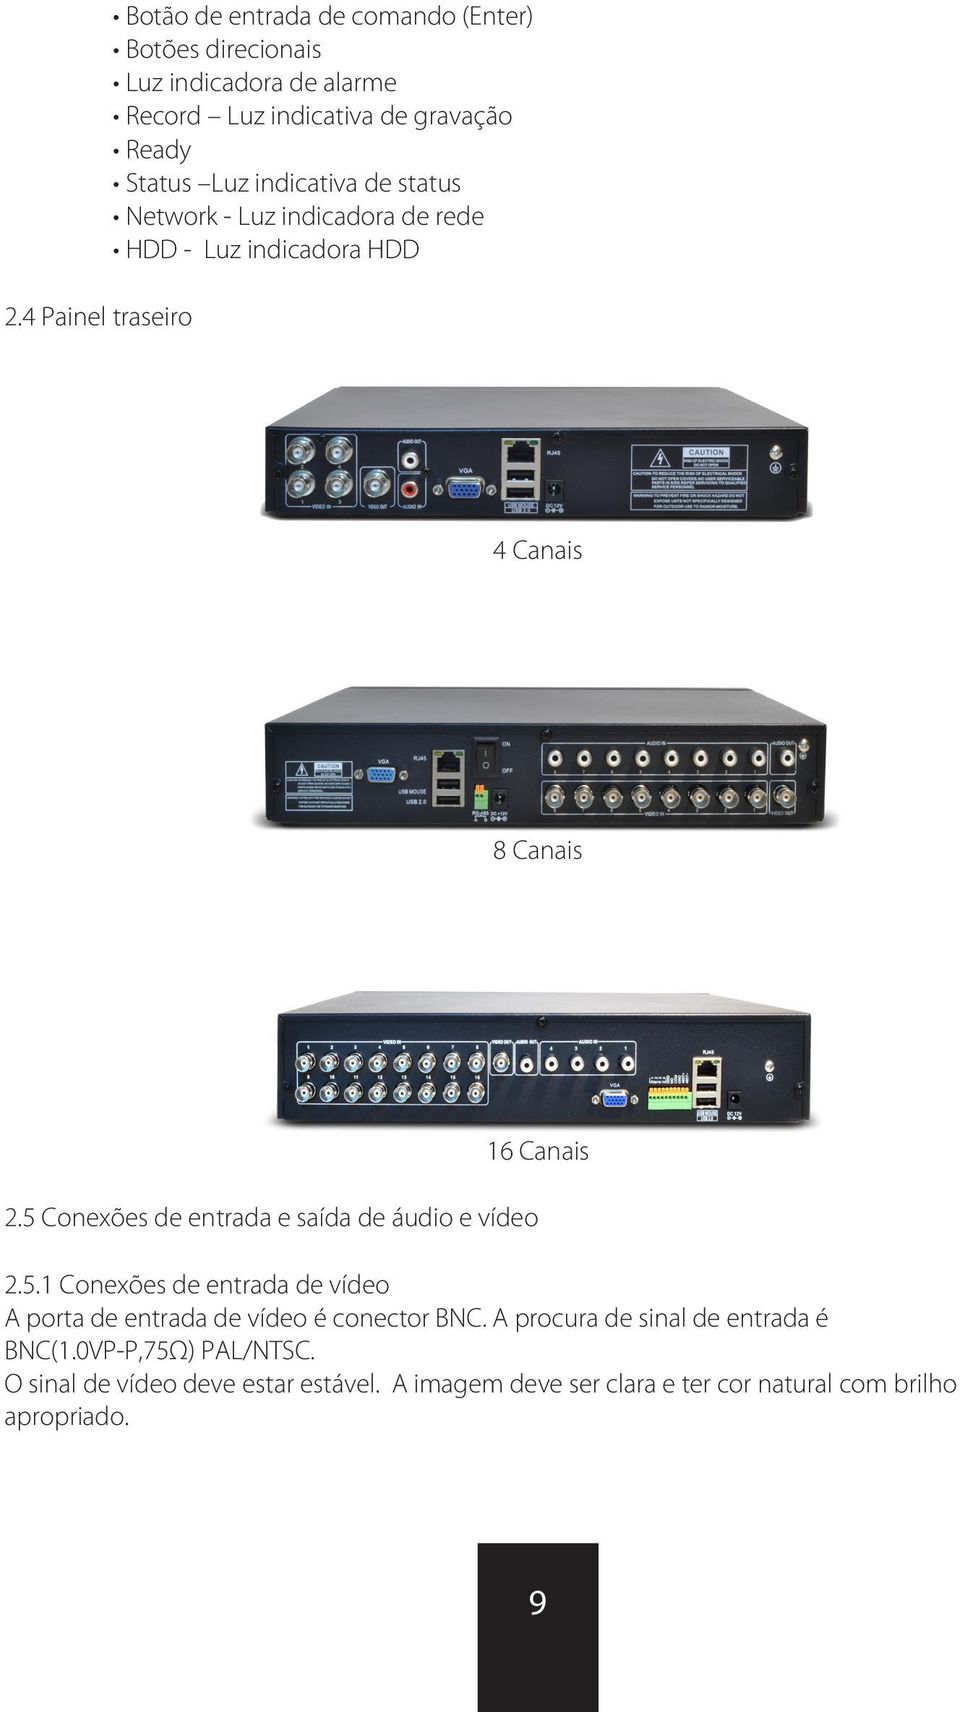 5 Conexões de entrada e saída de áudio e vídeo 2.5.1 Conexões de entrada de vídeo A porta de entrada de vídeo é conector BNC.